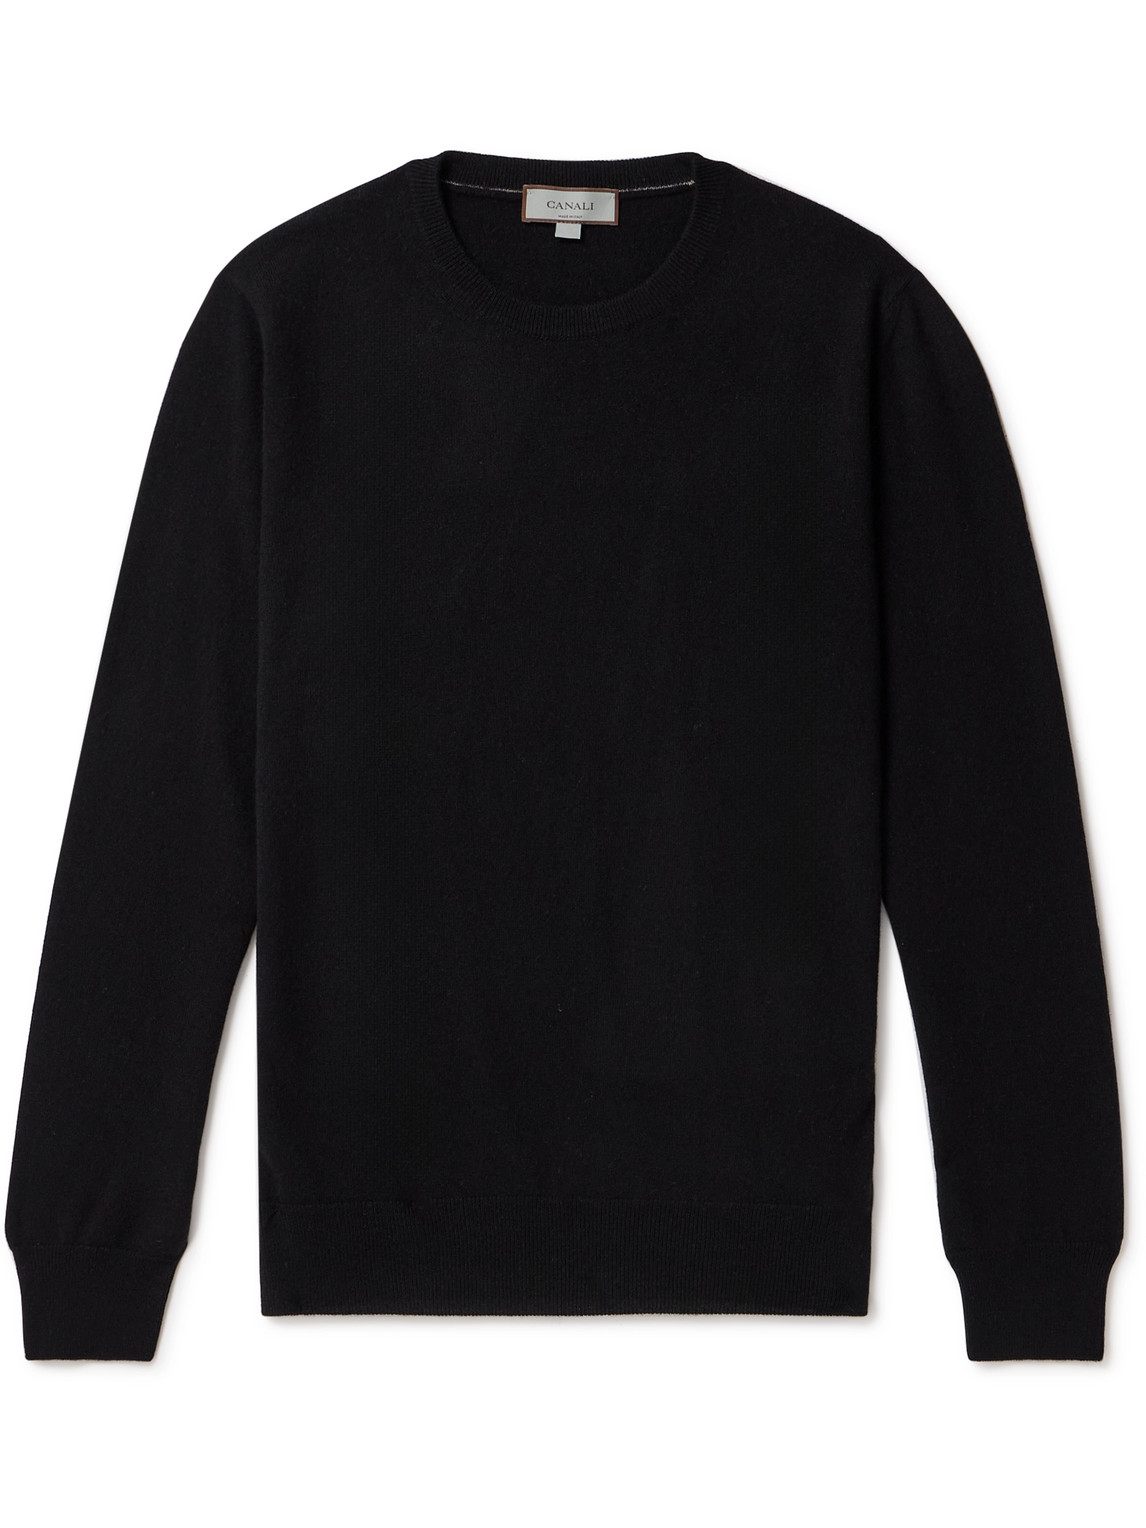 Canali Cashmere Sweater In Black